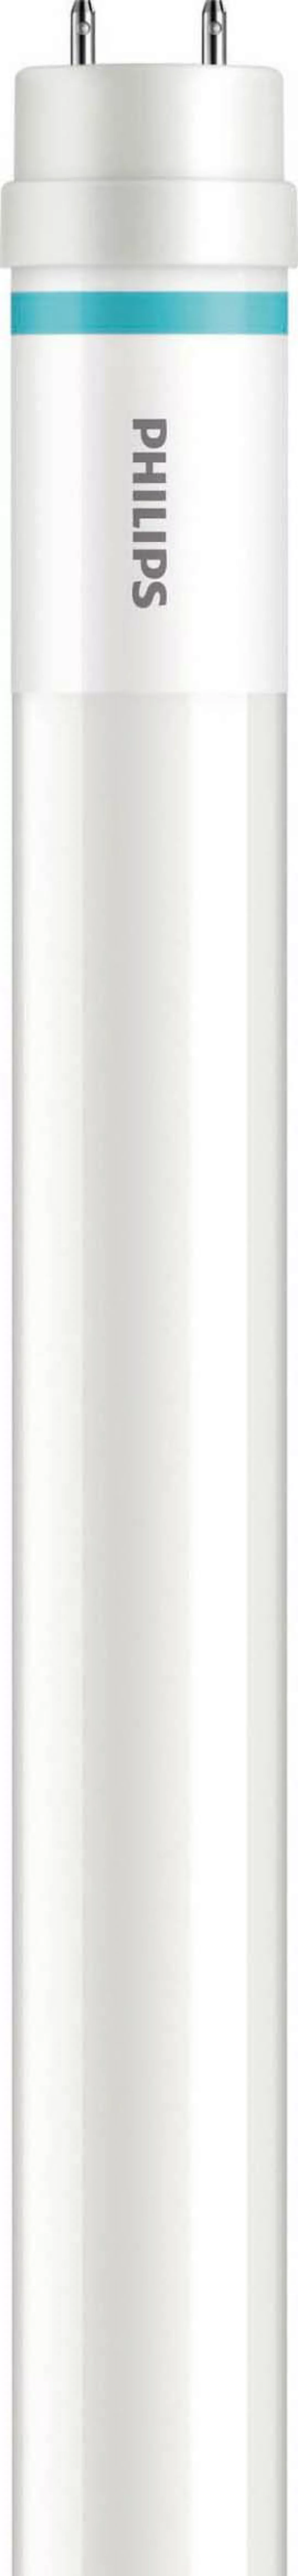 Philips Lighting LED-Tube 1500mm HO20.5W 865T8 MLEDtubeVLE#64695000 günstig online kaufen